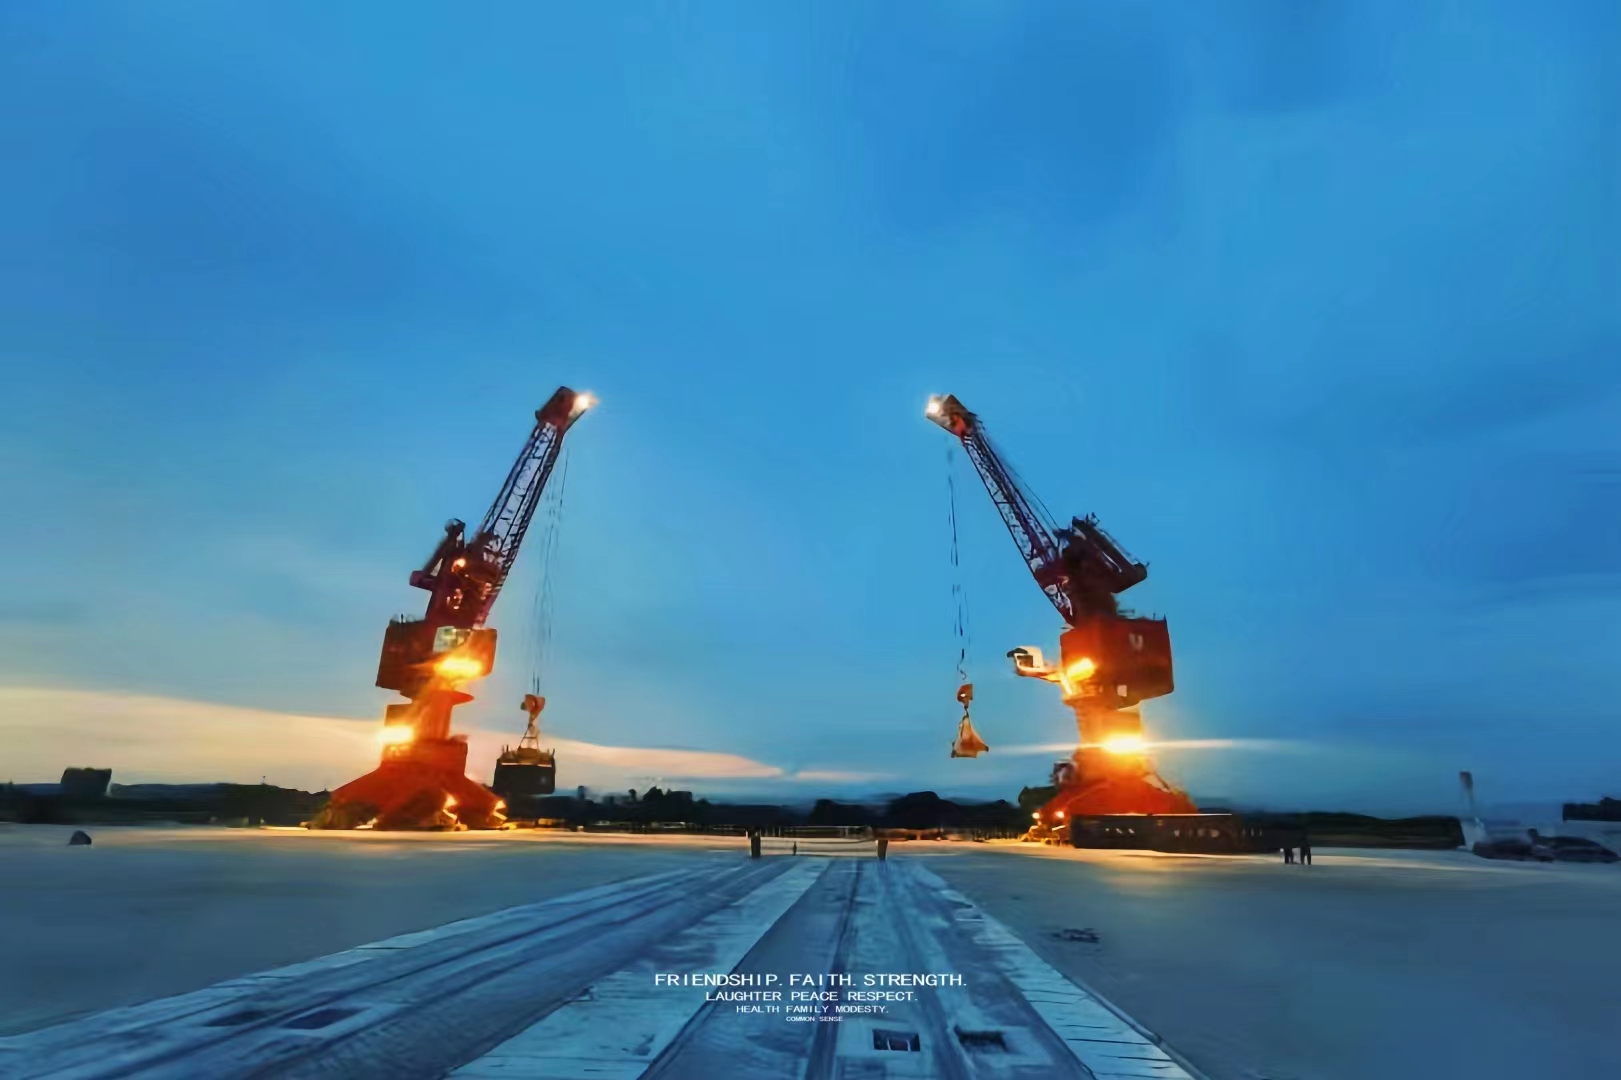 weihua-portal-cranes-project